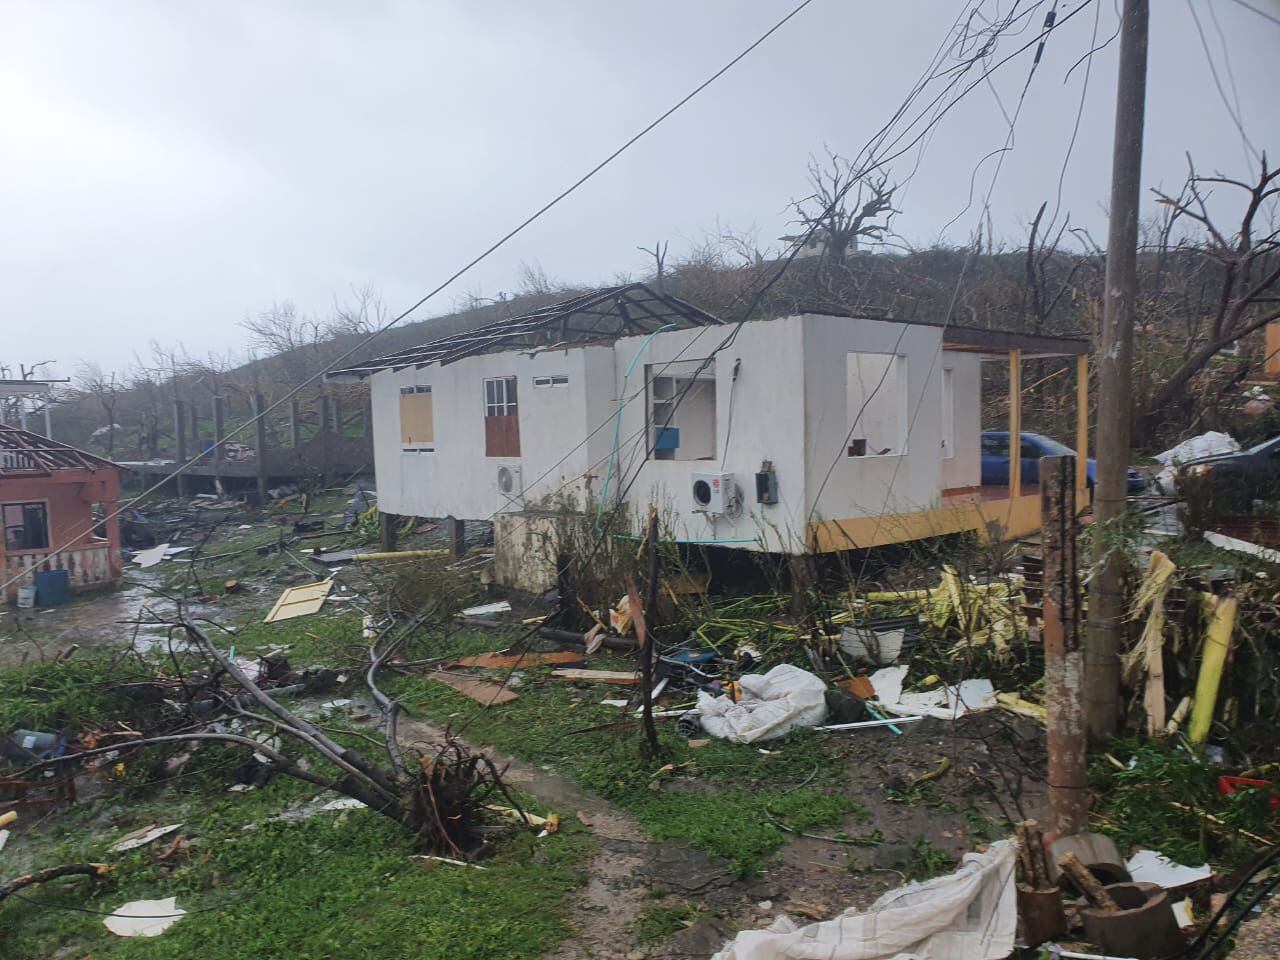 Casas sin techo y prácticamente sin nada, esos fueron los devastadores resultados del huracán Iota en Providencia.